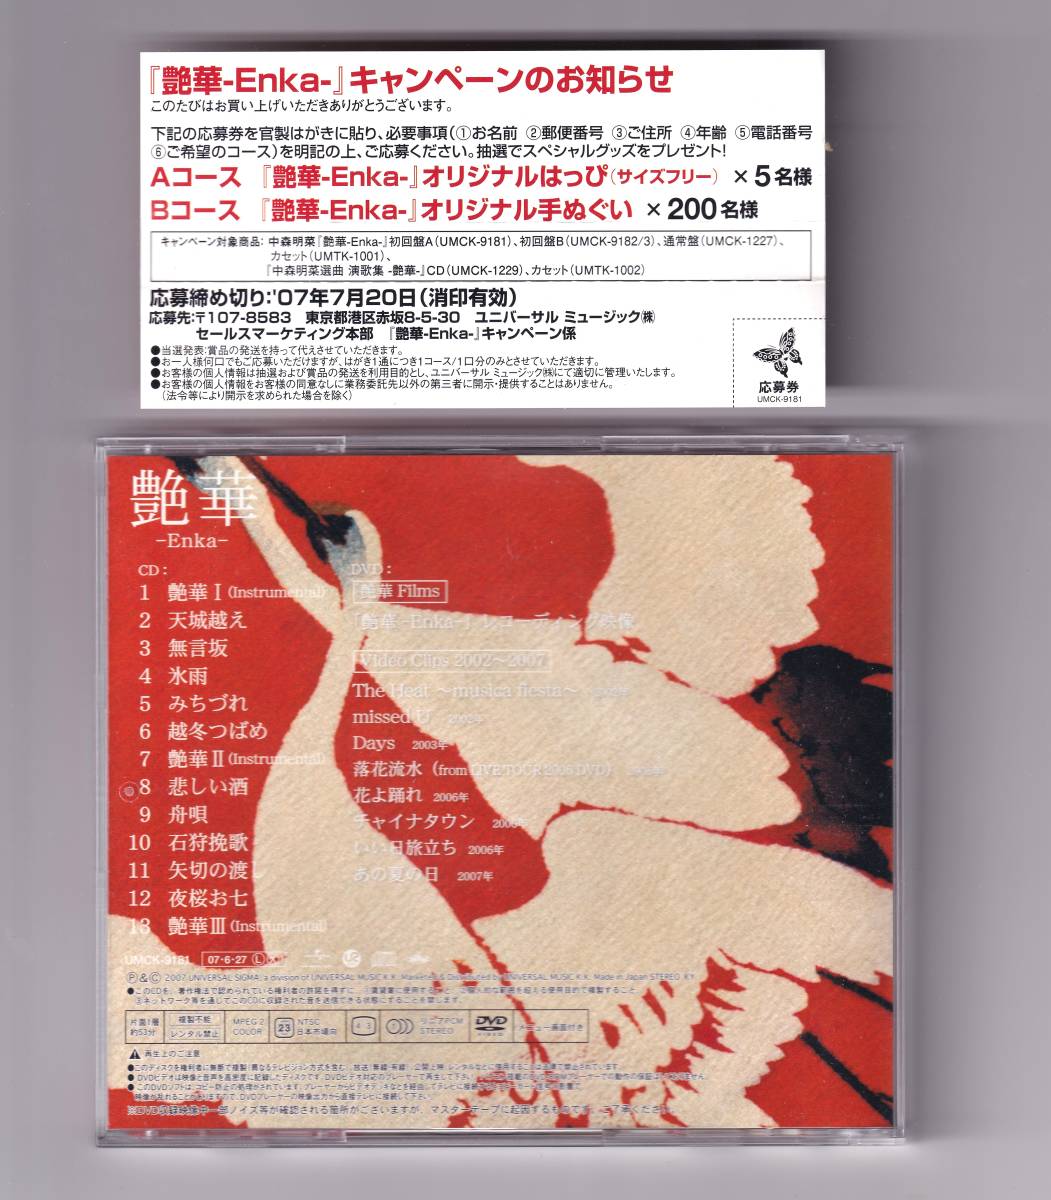 中森明菜 艶華-Enka- 2007年オリジナル初回A限定盤 DVD付CD 廃盤希少品_画像2